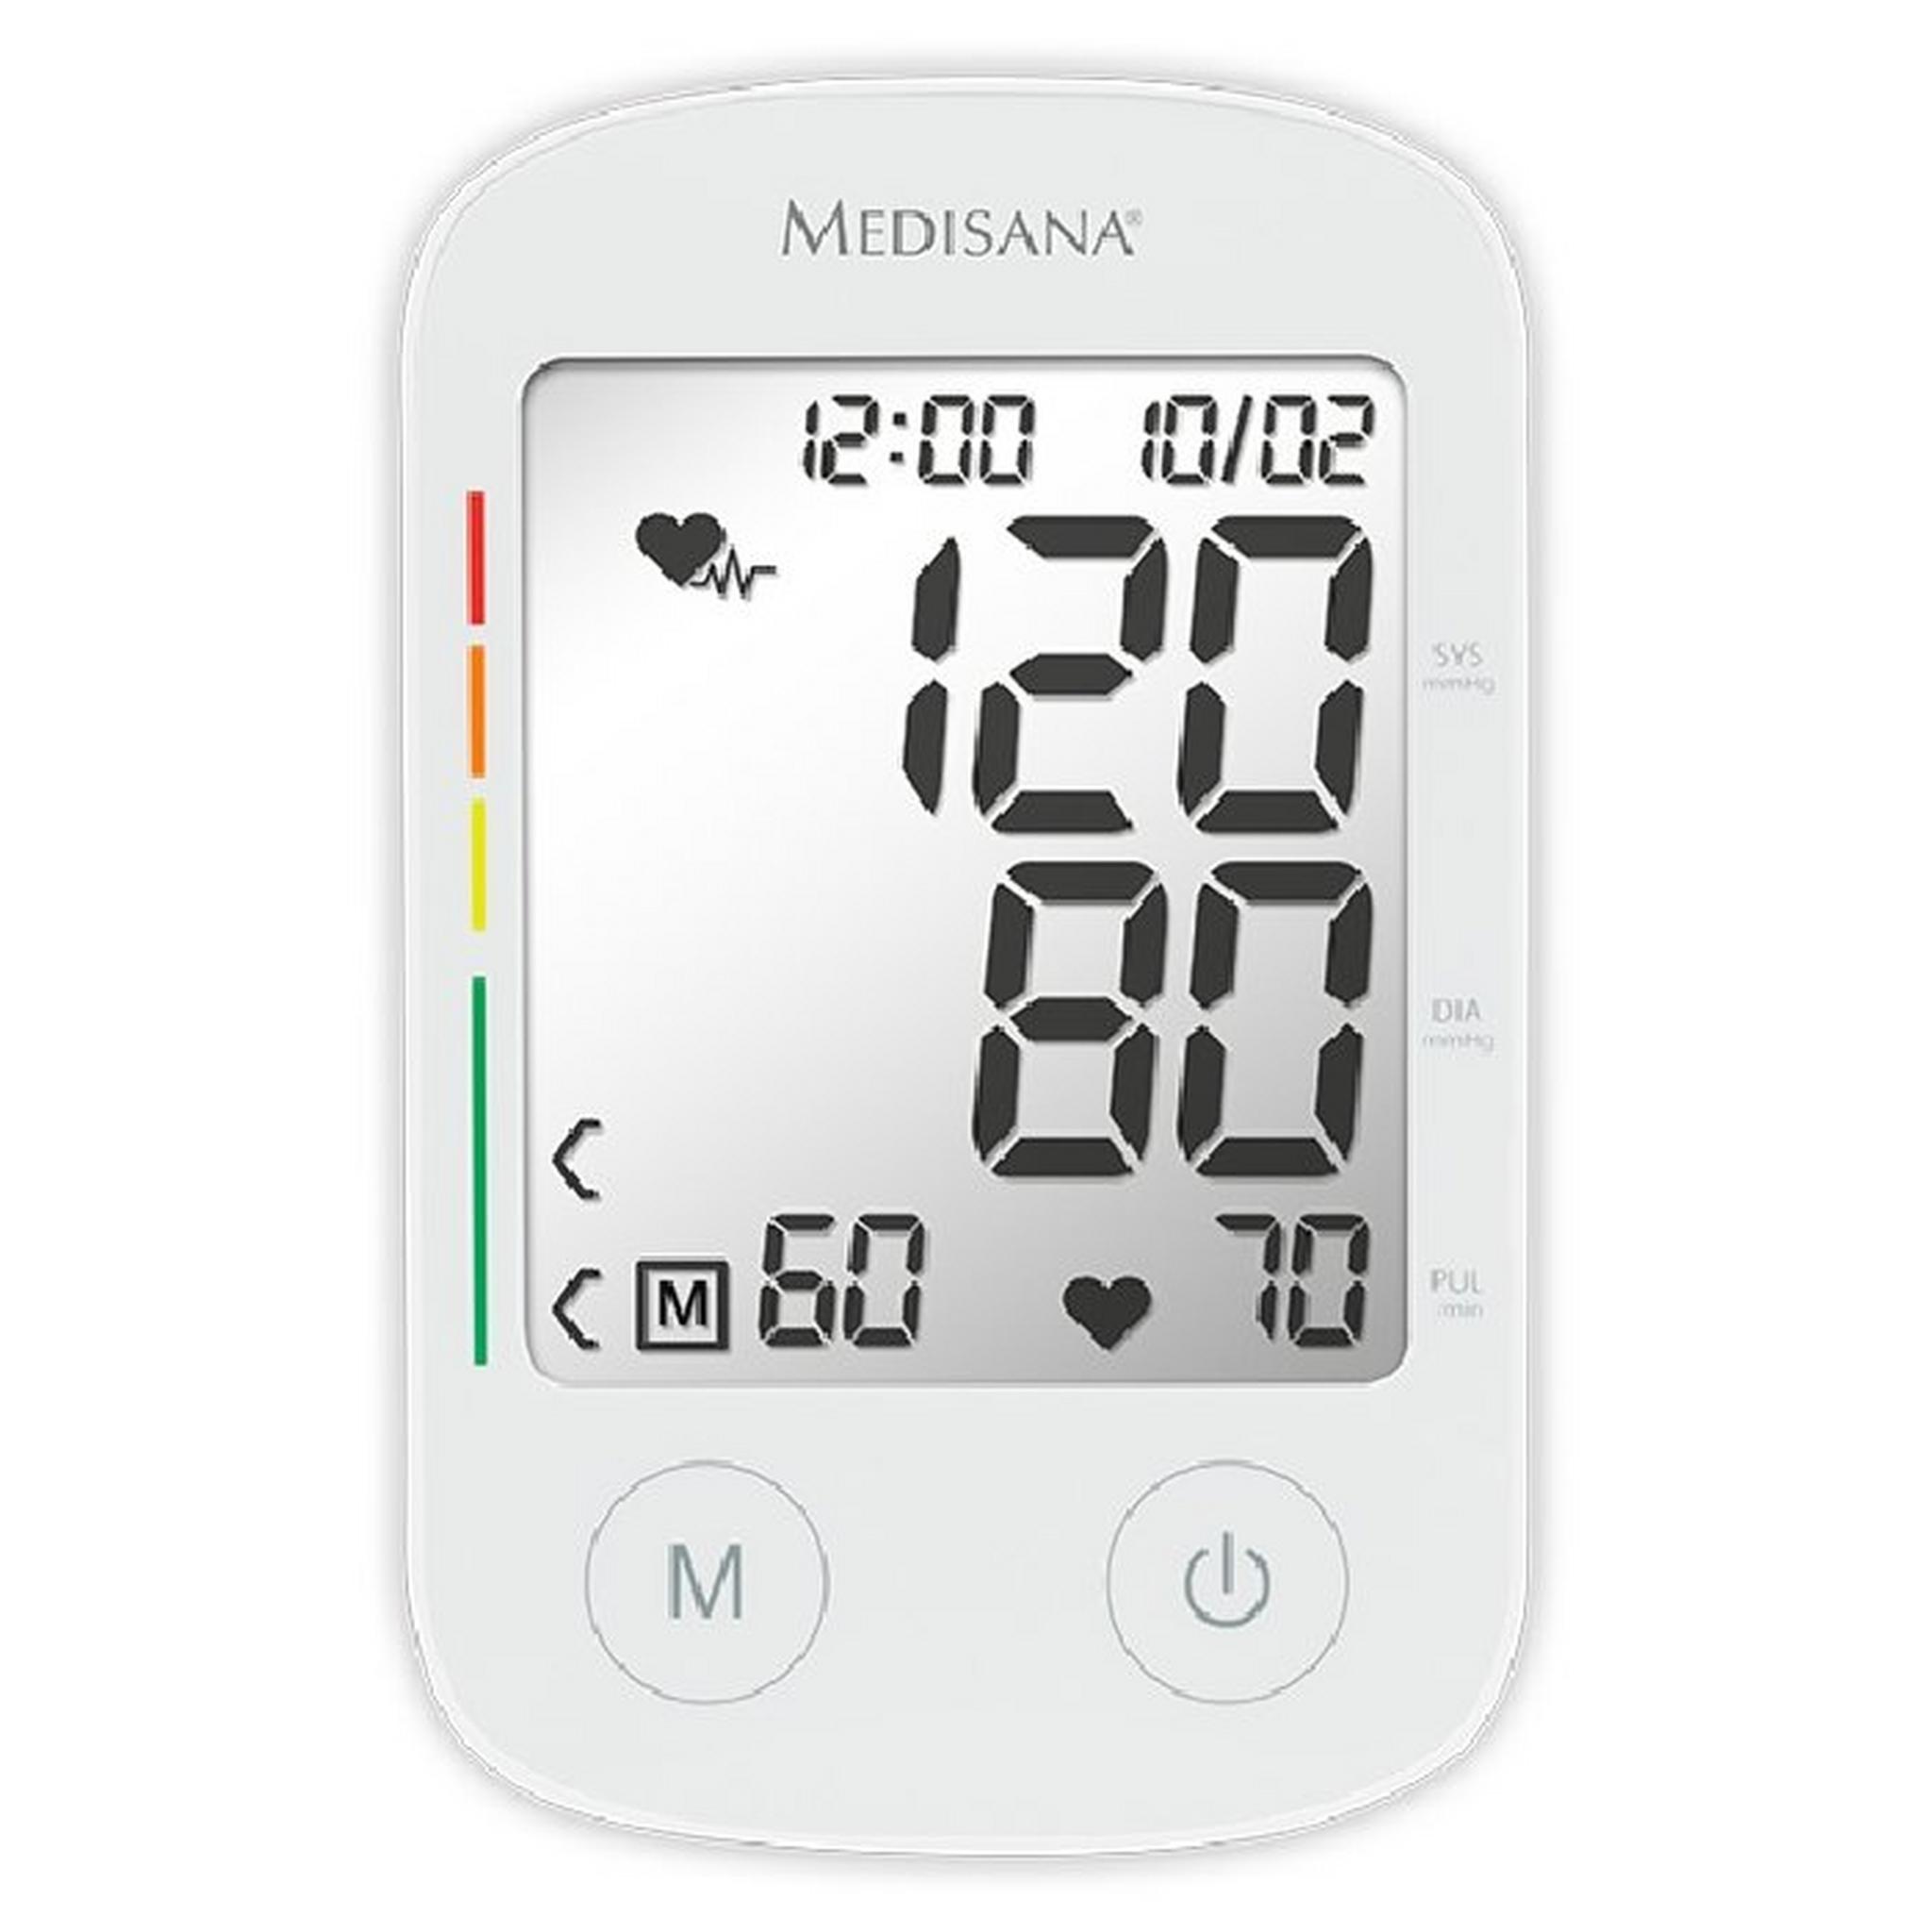 جهاز قياس ضغط الدم من أعلى الذراع ميديسانا BU535 (51176)